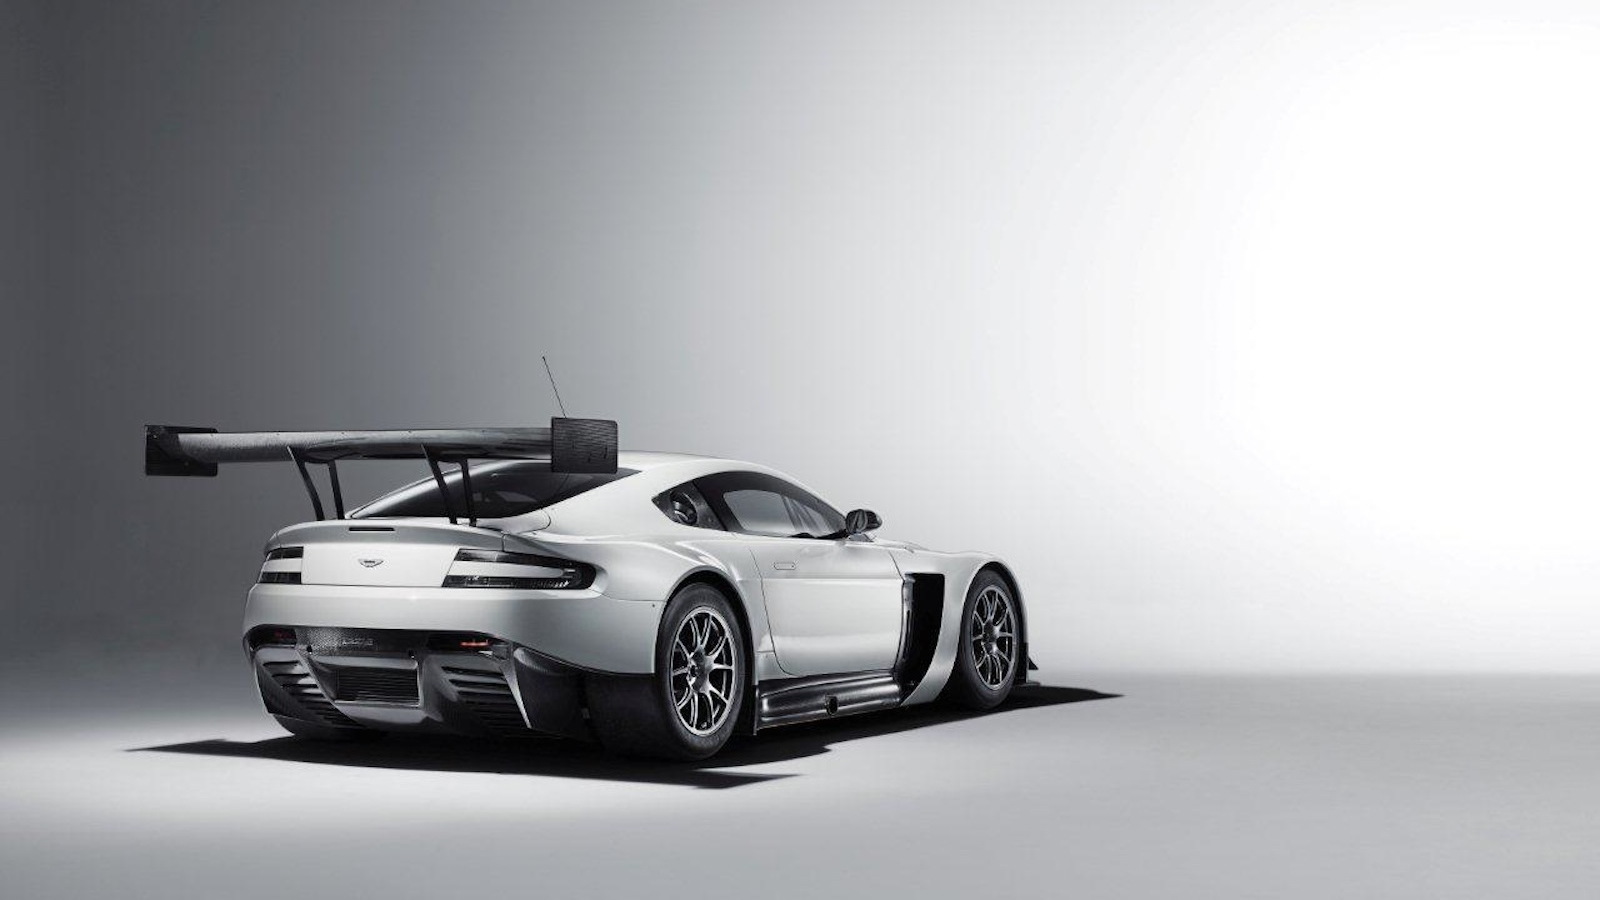 The Aston Martin Vantage GT3